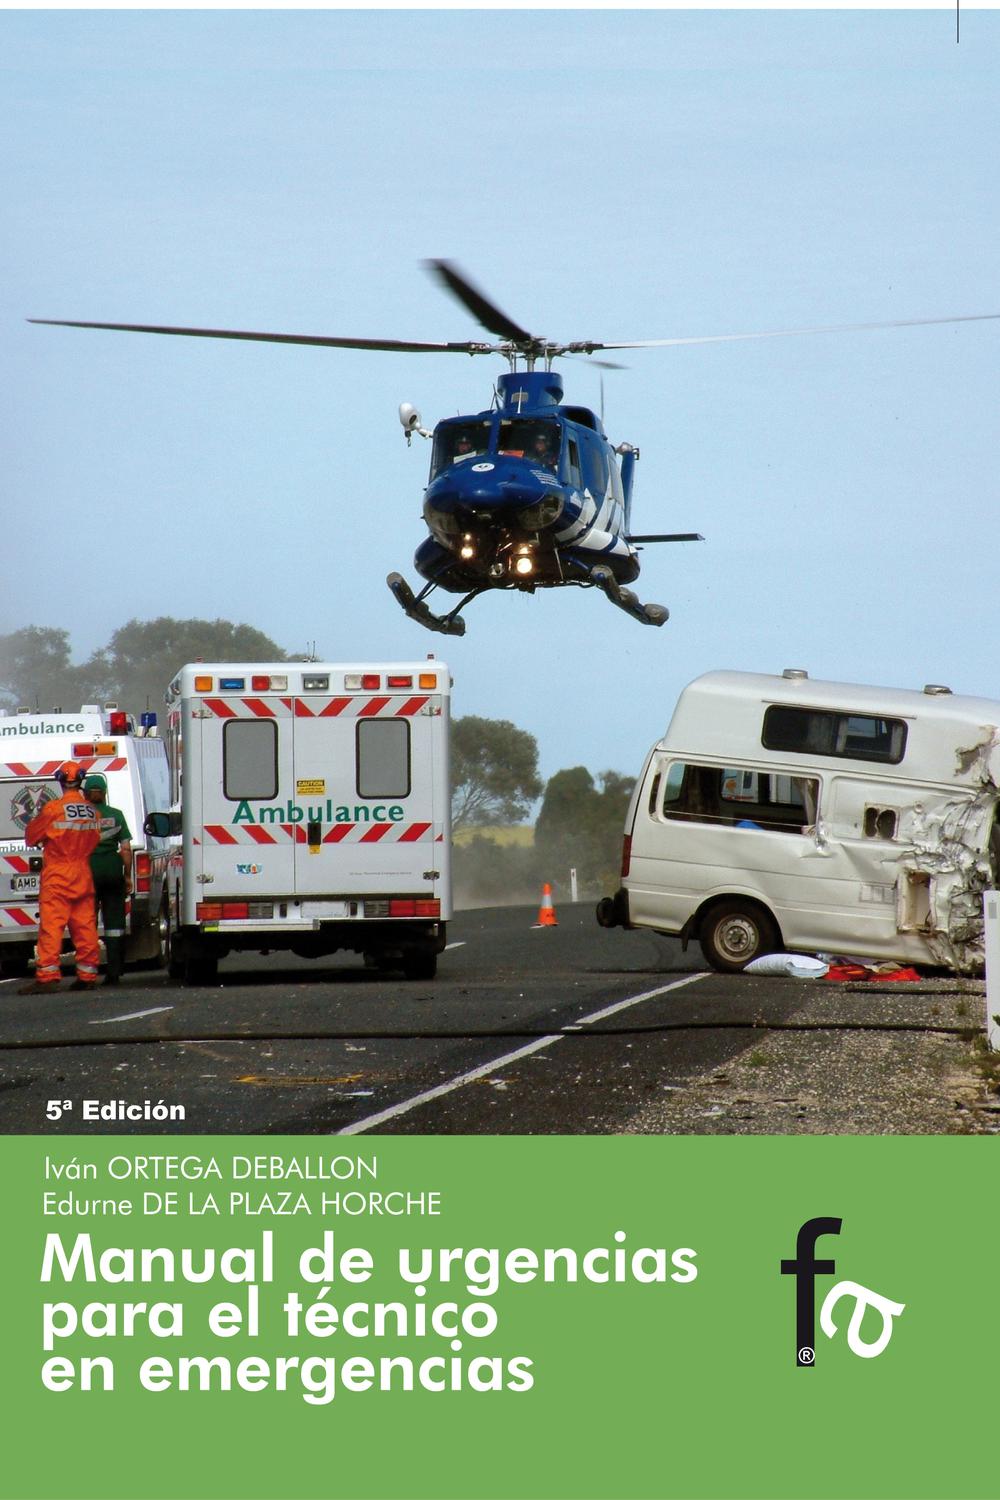 Manual de urgencias para el técnico en emergencias - Iván Ortega Deballon